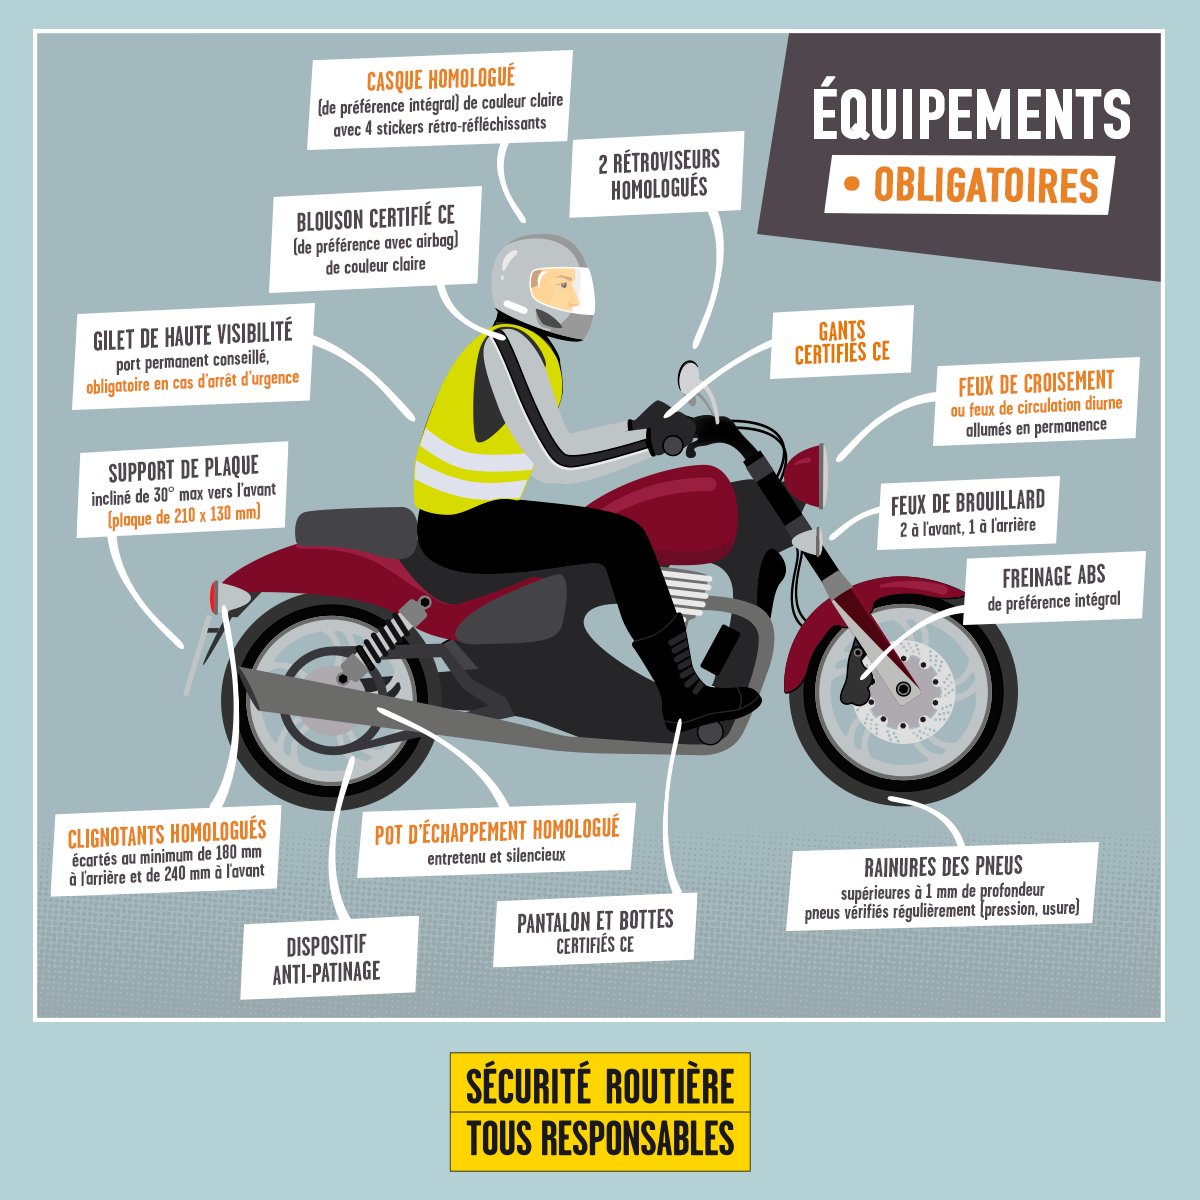 Feux additionnels des motos : quelques conseils pratiques